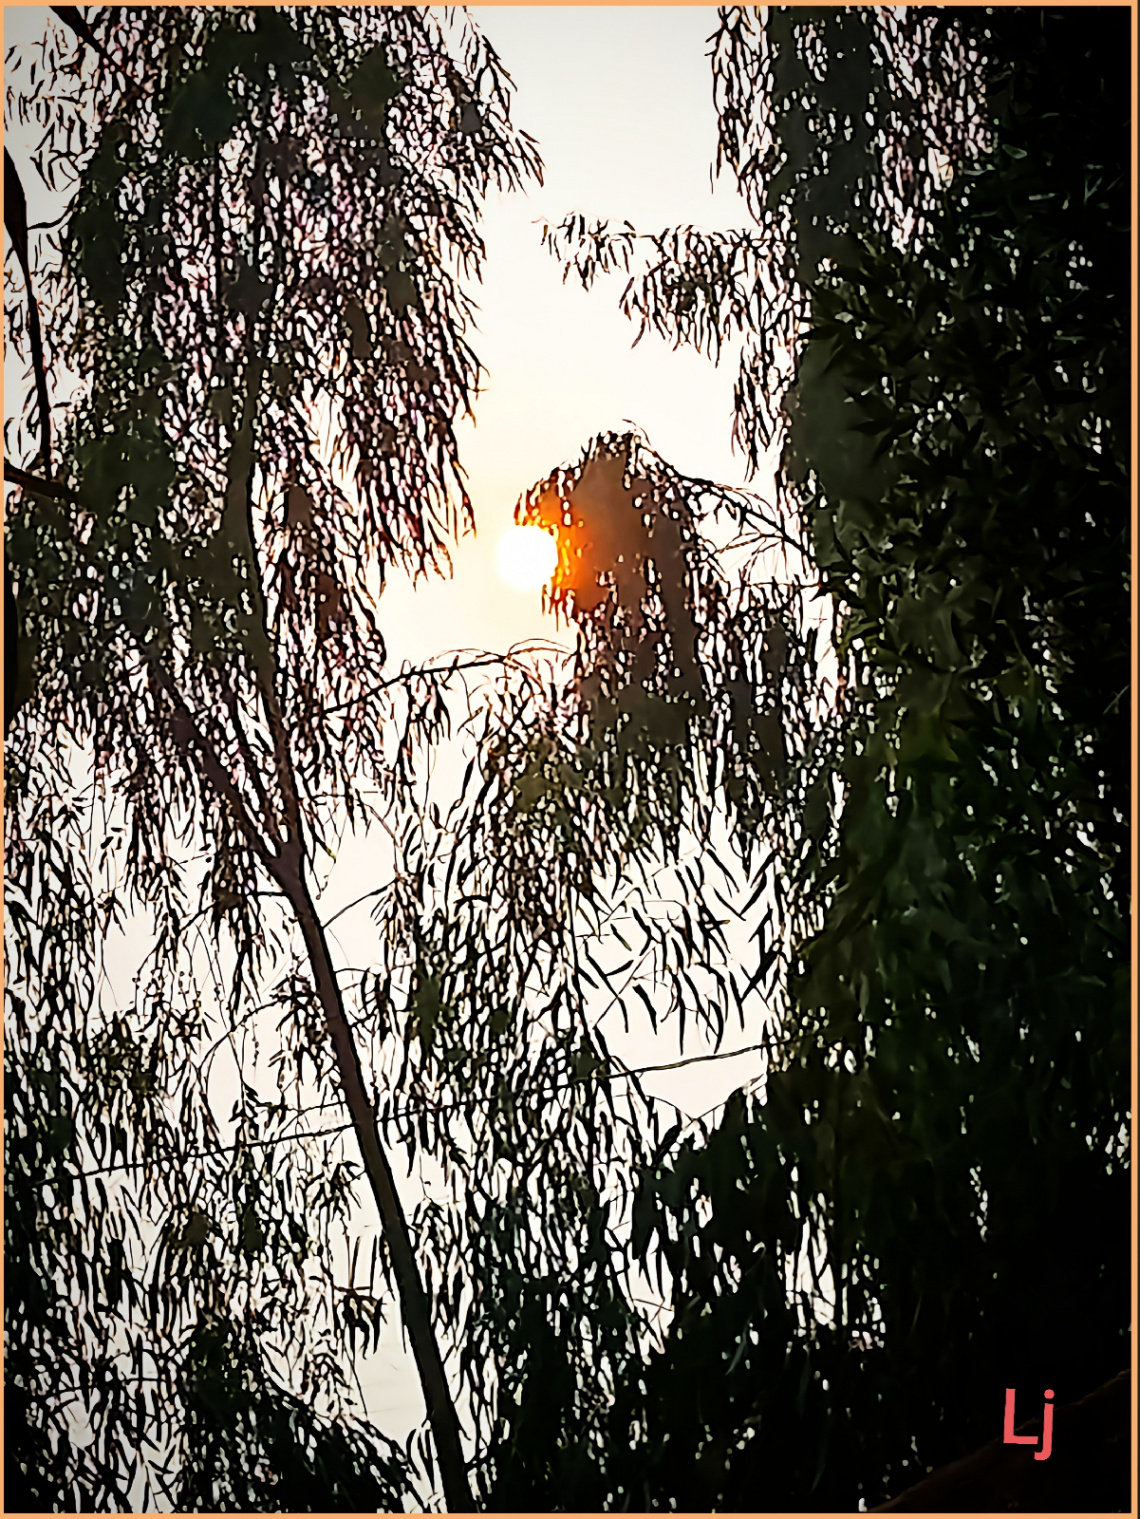 Eucalyptus at Sunset